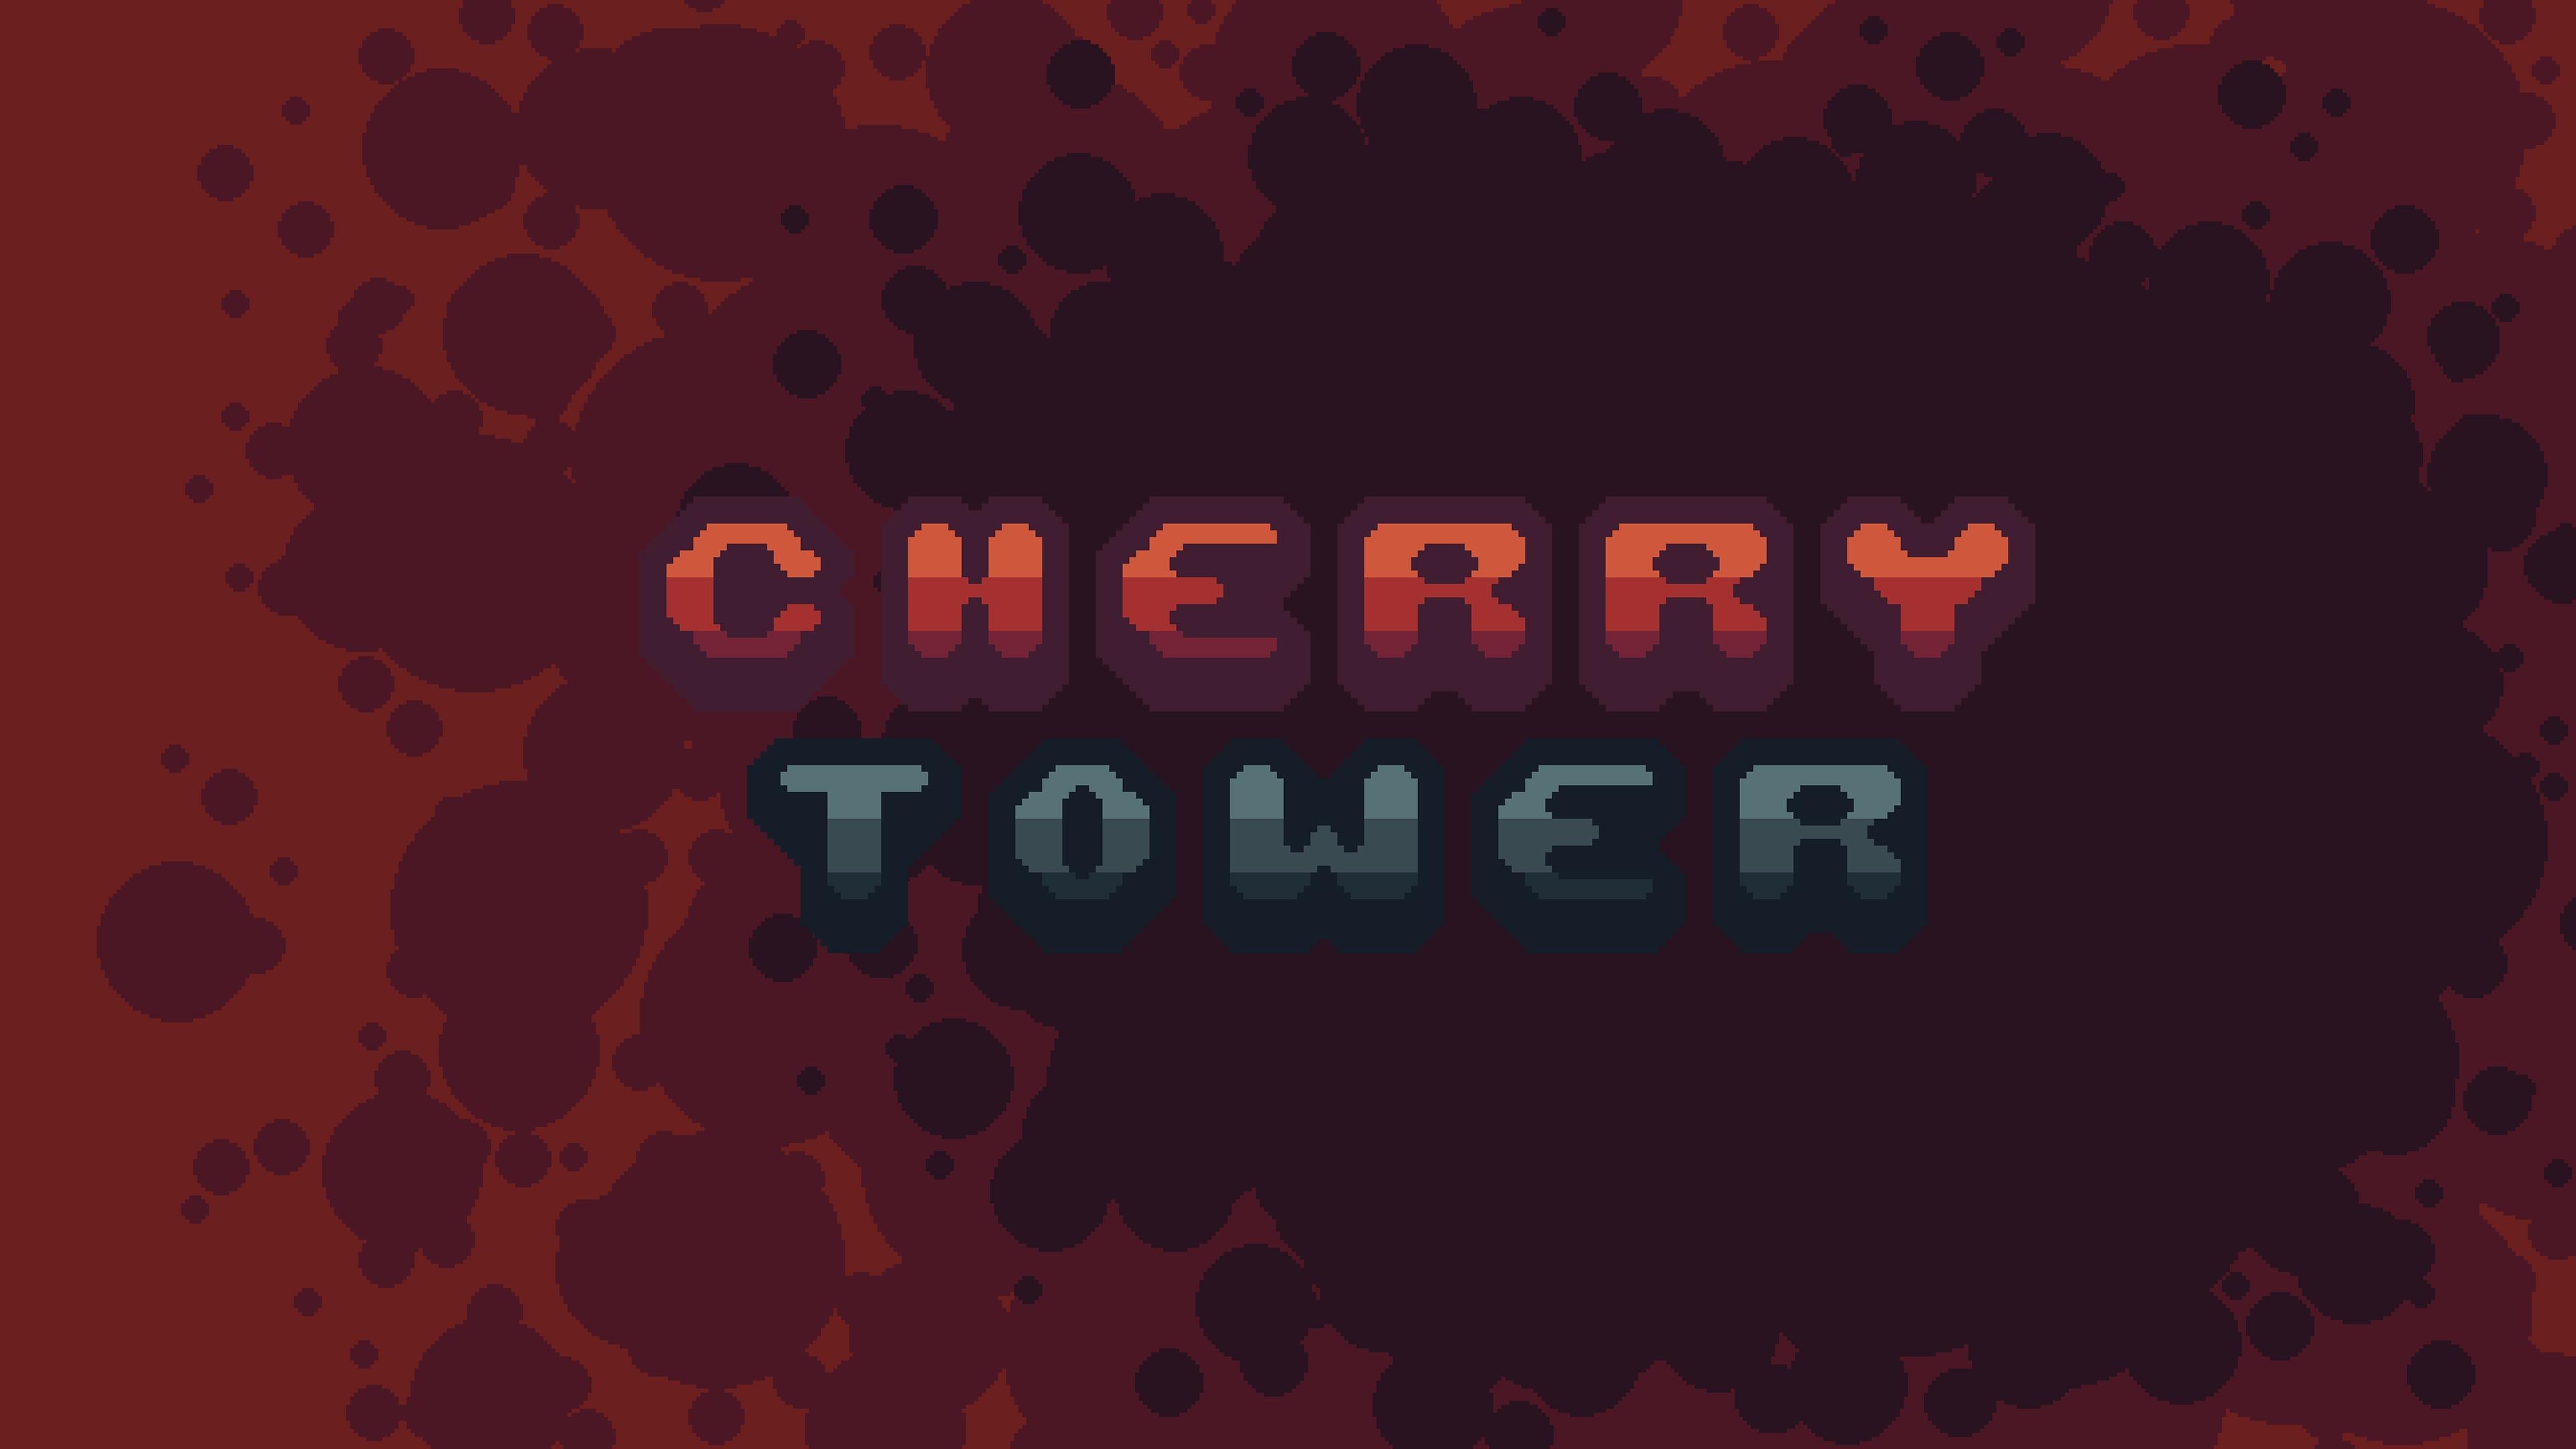 Cherry Tower